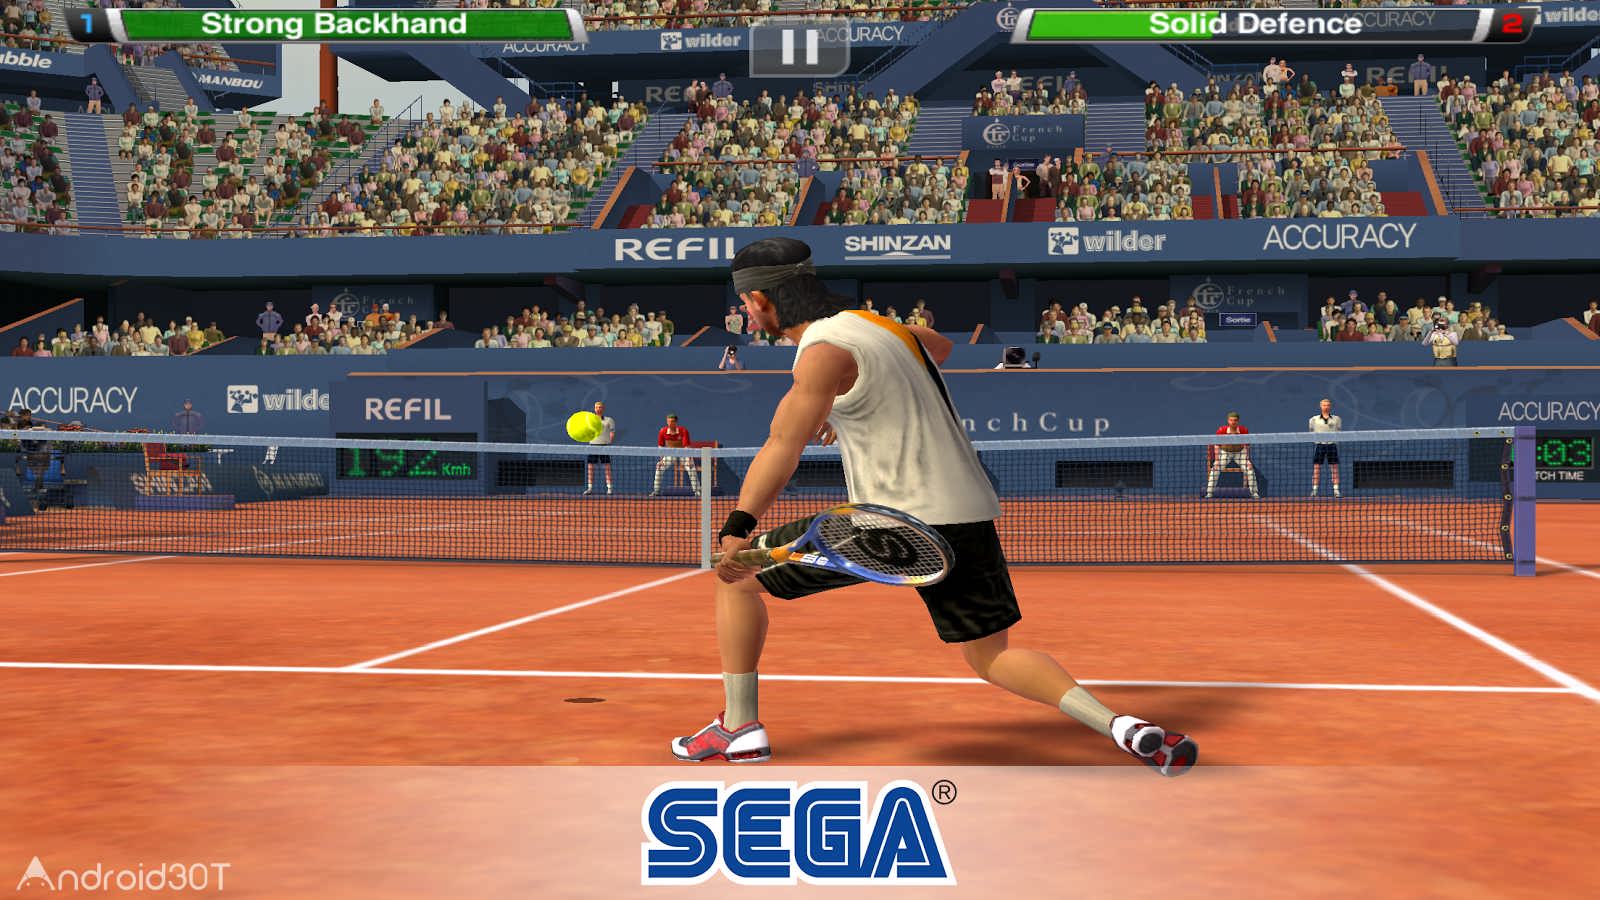 دانلود Virtua Tennis Challenge 1.4.7 – بازی تنیس سه بعدی اندروید